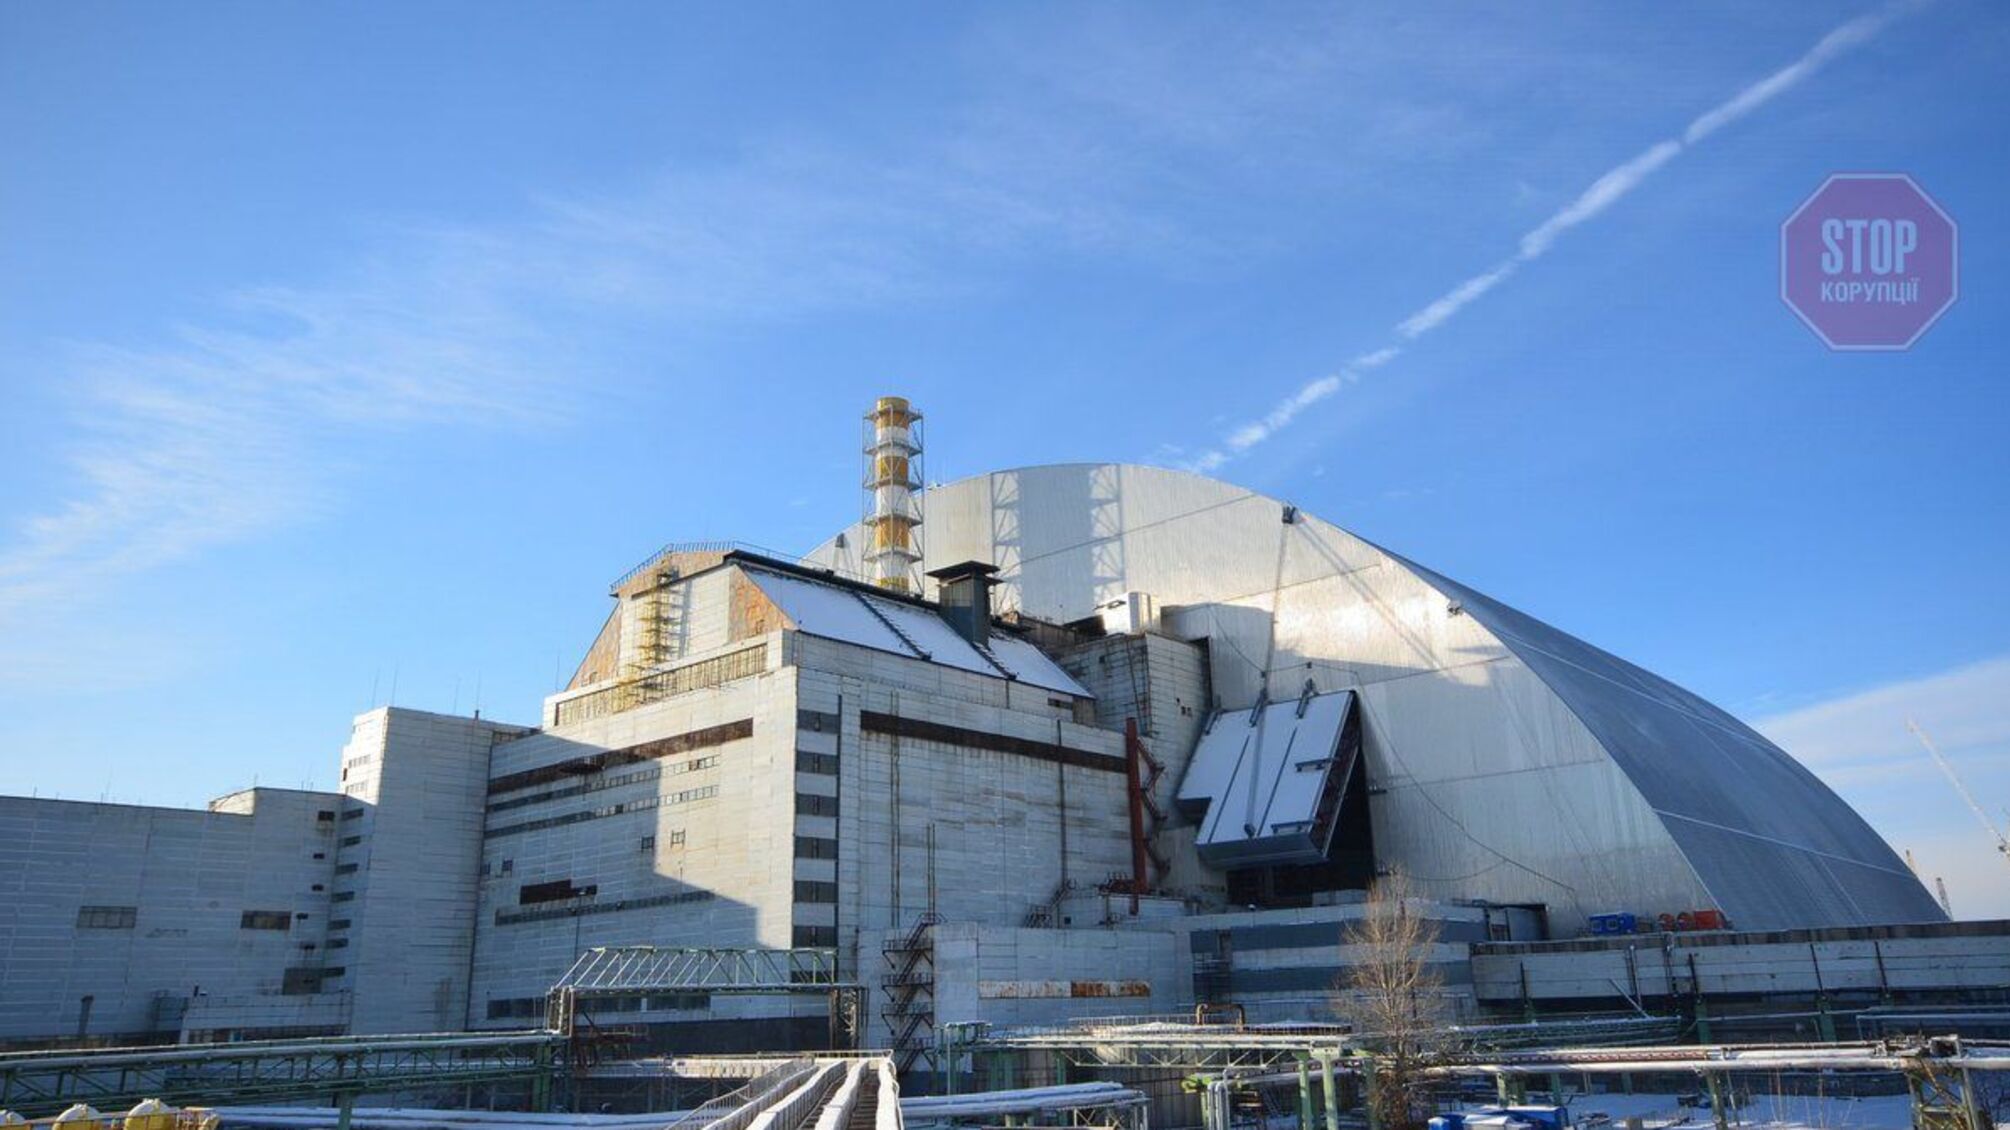 Міненерго повідомляє, що на Чорнобильській АЕС відновлено електропостачання